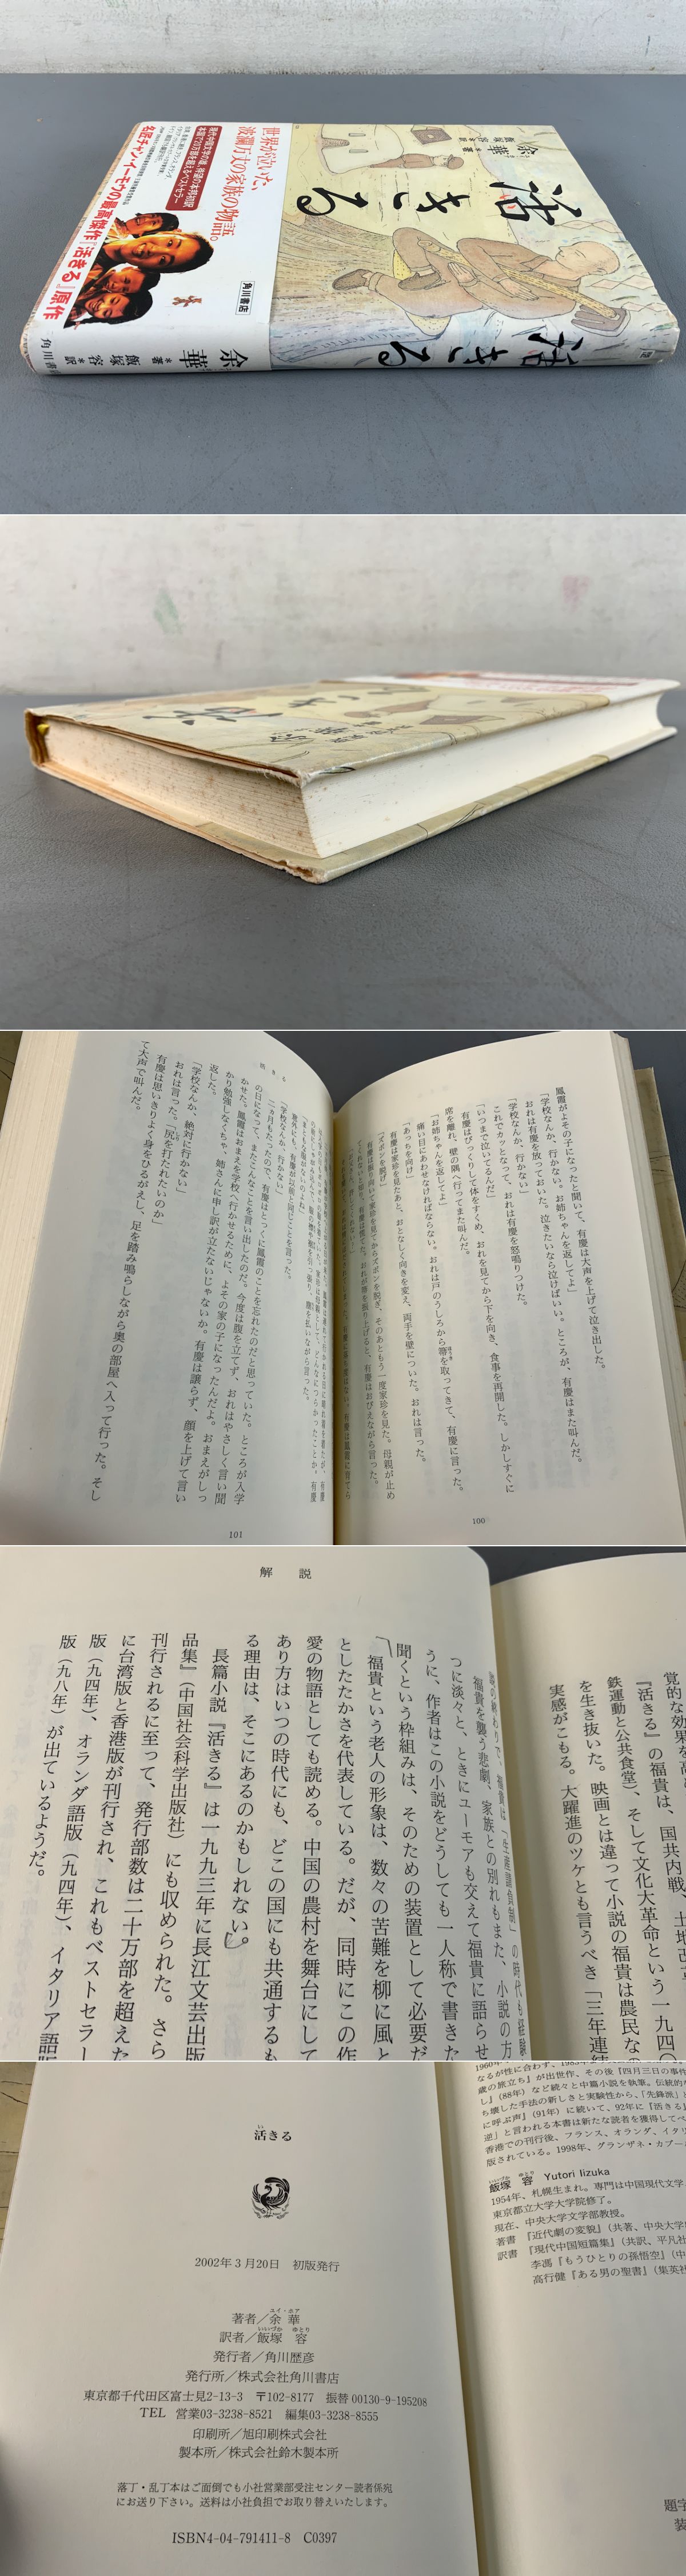 活きる(余華) / 古本、中古本、古書籍の通販は「日本の古本屋」 / 日本の古本屋